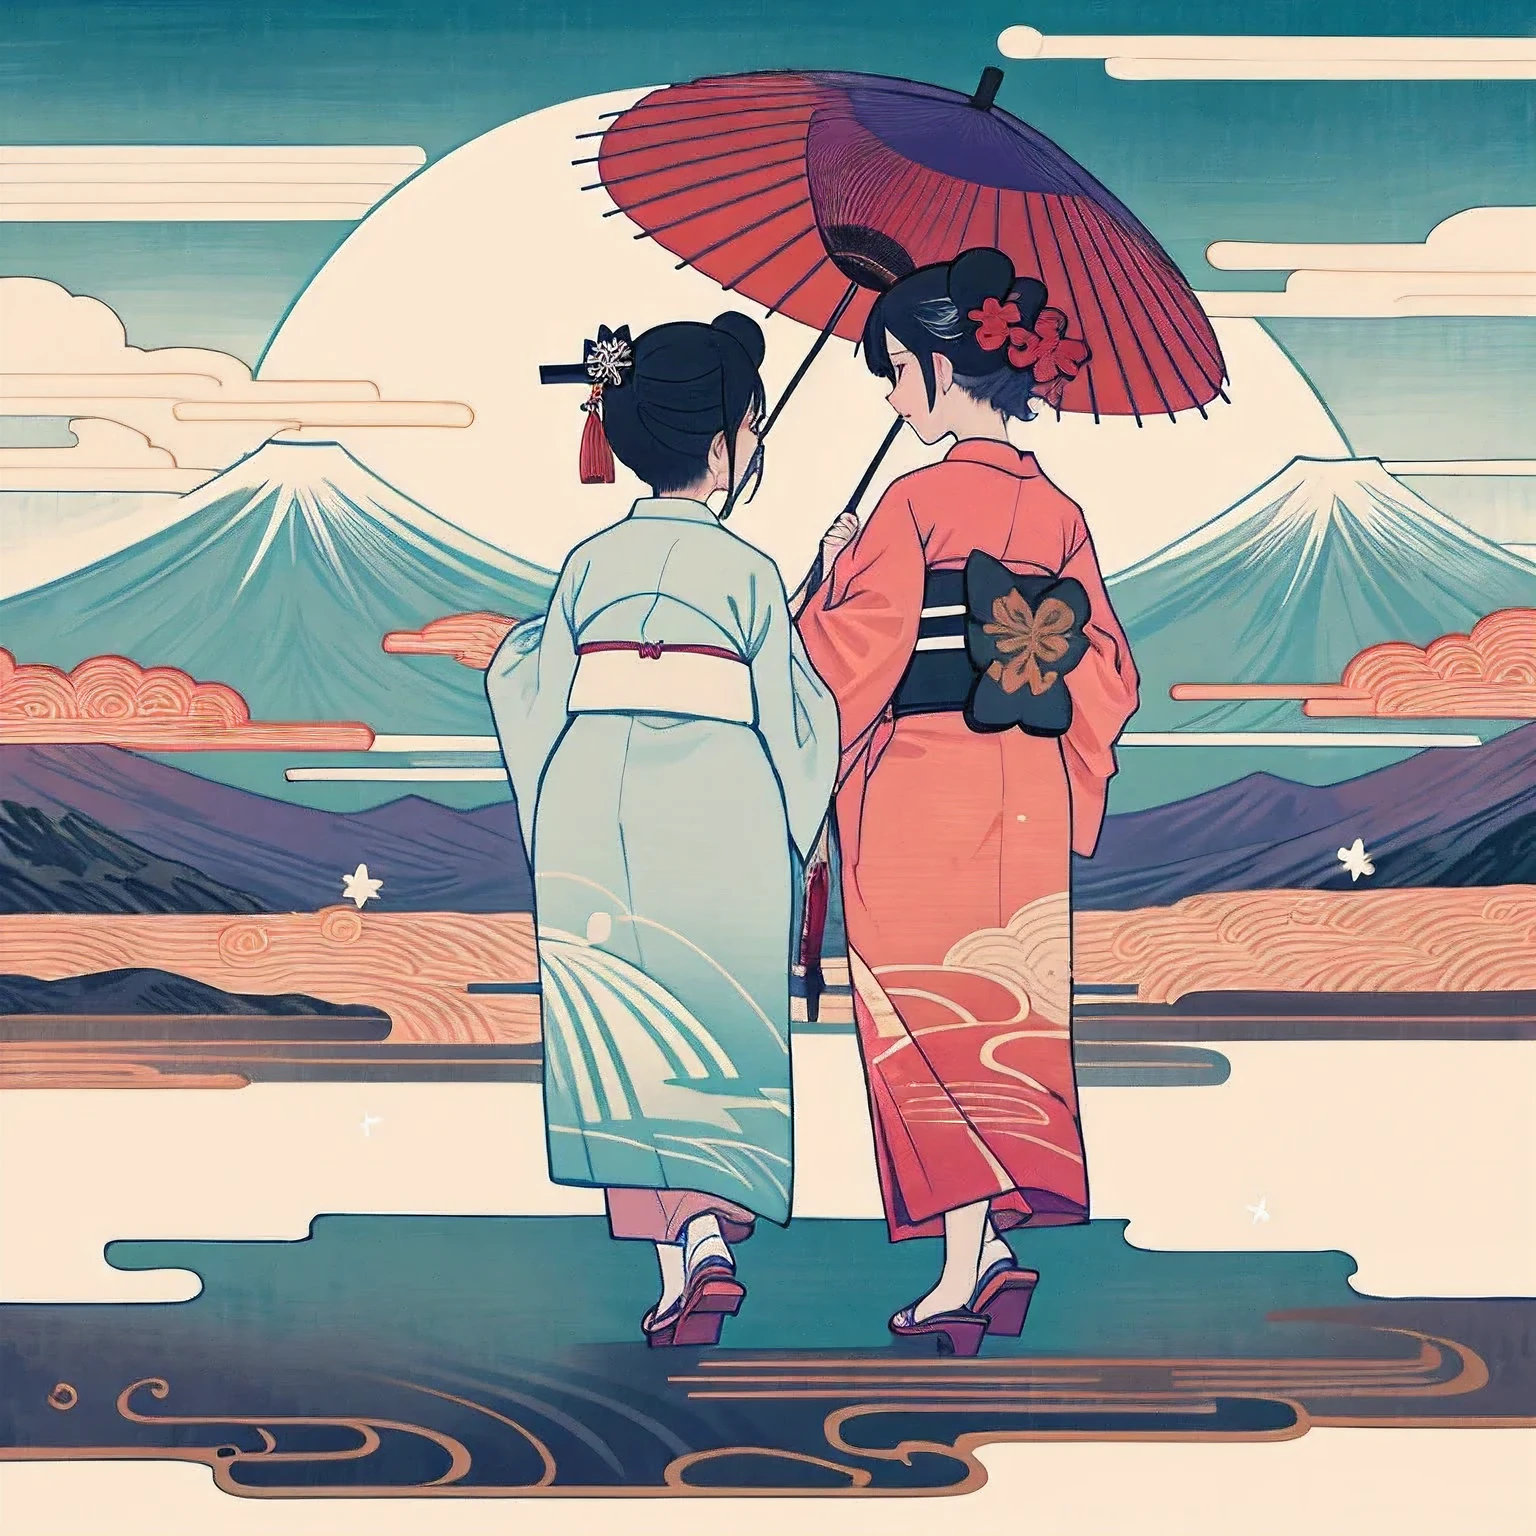 来自京都的舞妓, 两个人, 穿和服, 两个人並んで立って歩いている, 两个人, 均为女性, 脸被粉刷了, 后视图, 浮世绘 1, 全身角度, 穿木屐, 撑着日本伞散步, 紫色和白色的和服＆穿着红白相间的和服, 背景是雄伟的富士山., 闪闪发光的梦幻氛围